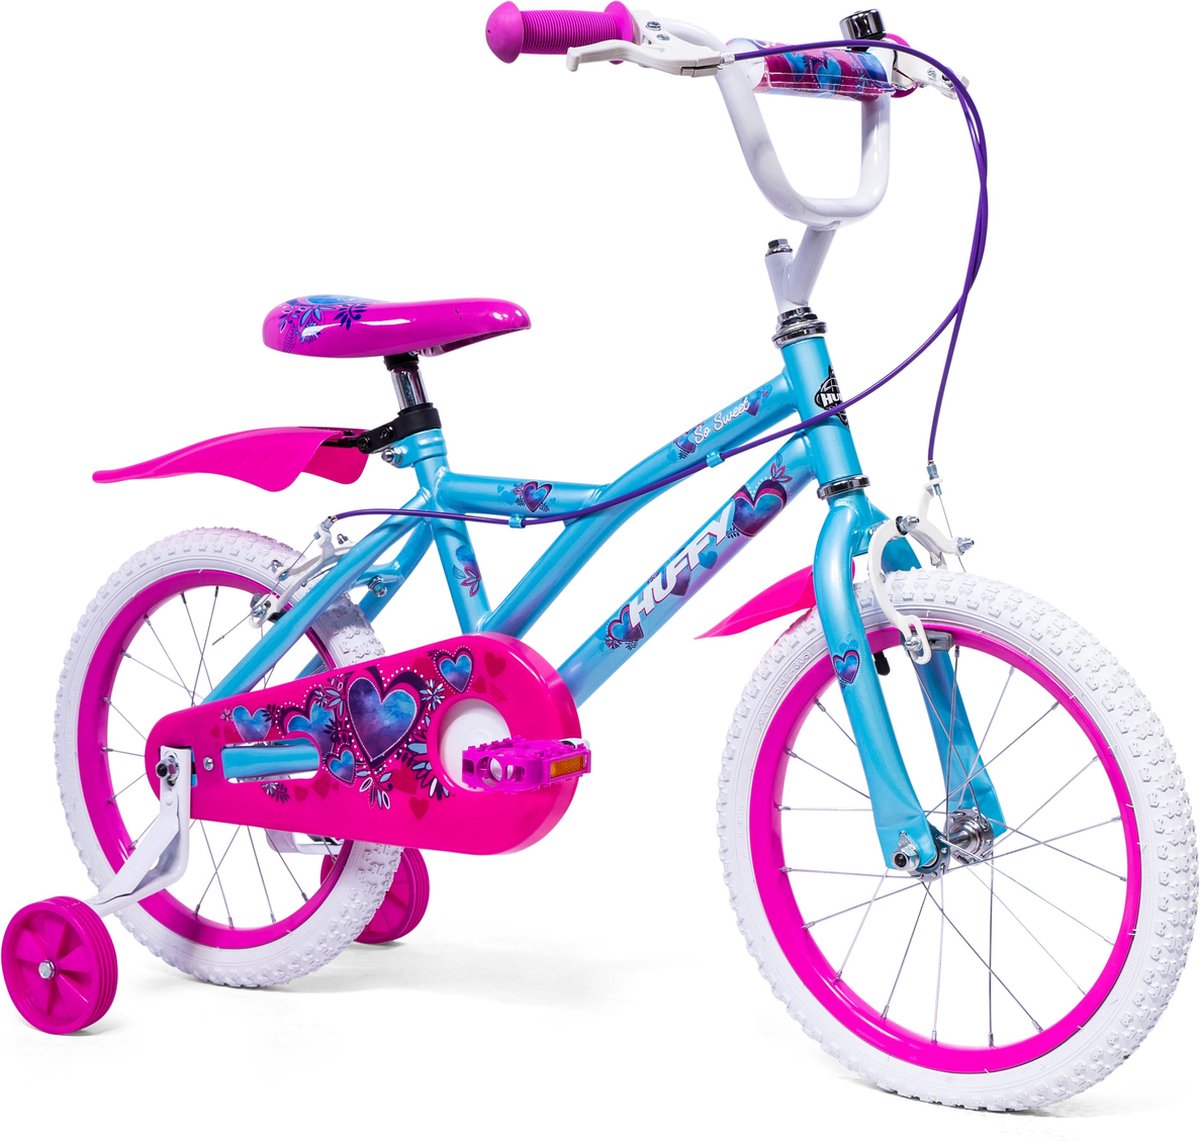 Huffy So Sweet 16 Inch Girl's Bike - Sky Blue Kids Bike 4 years+